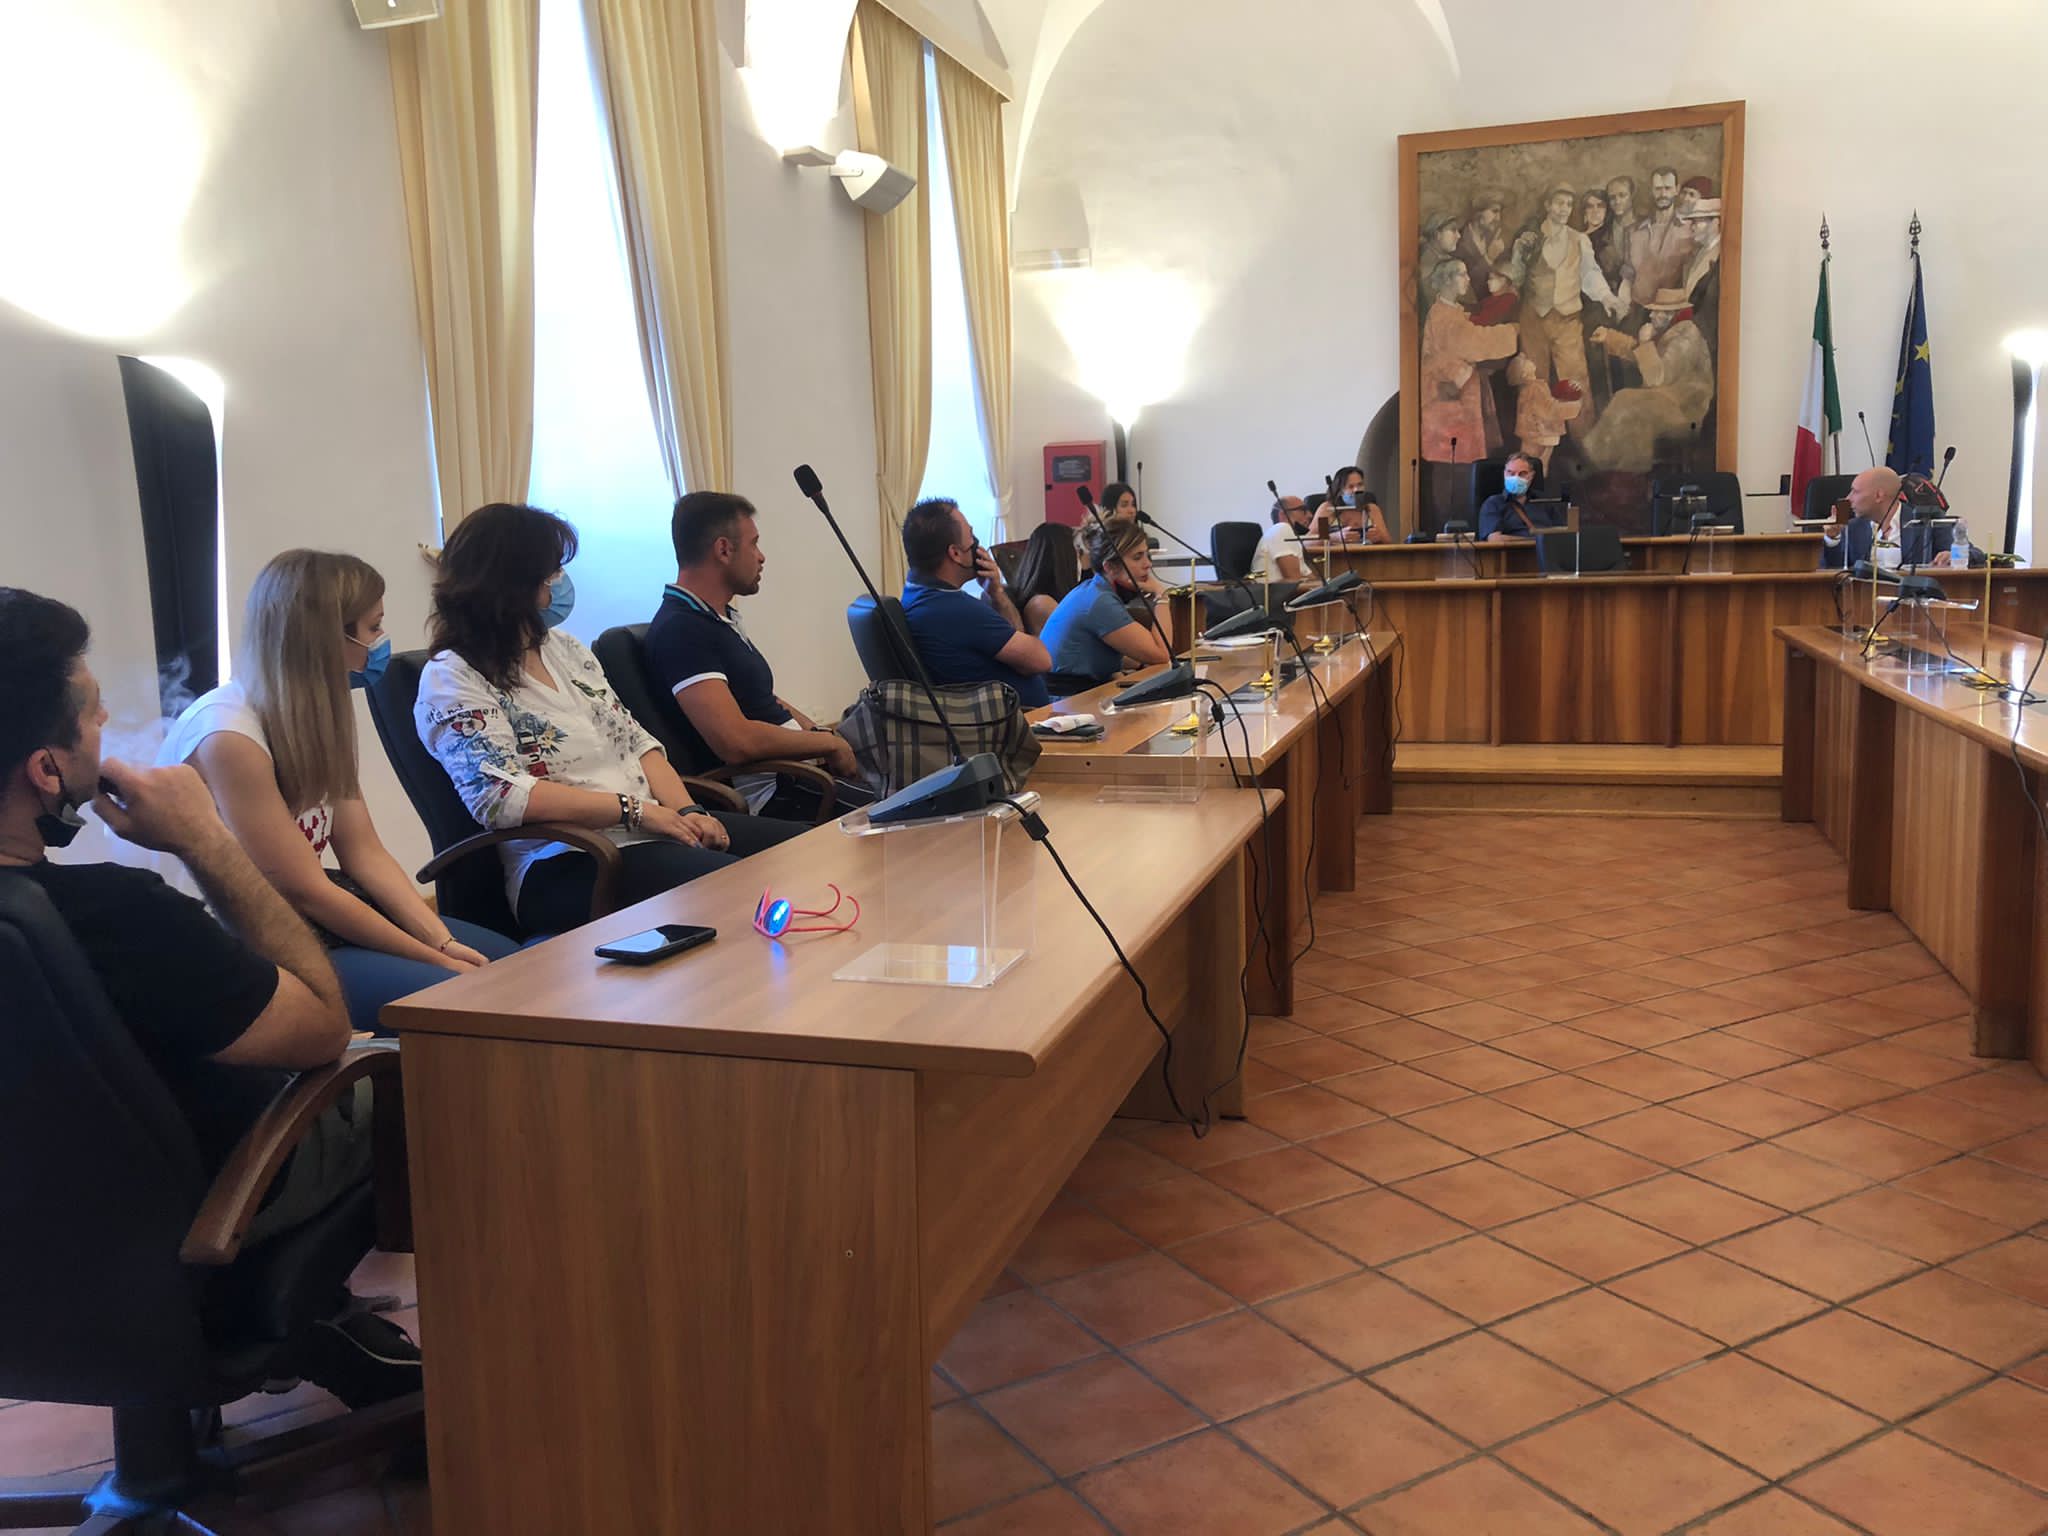 Post successivo: Presentazione dei nuovi corsi formativi di Disco Lazio con Rete imprese città di Valmontone